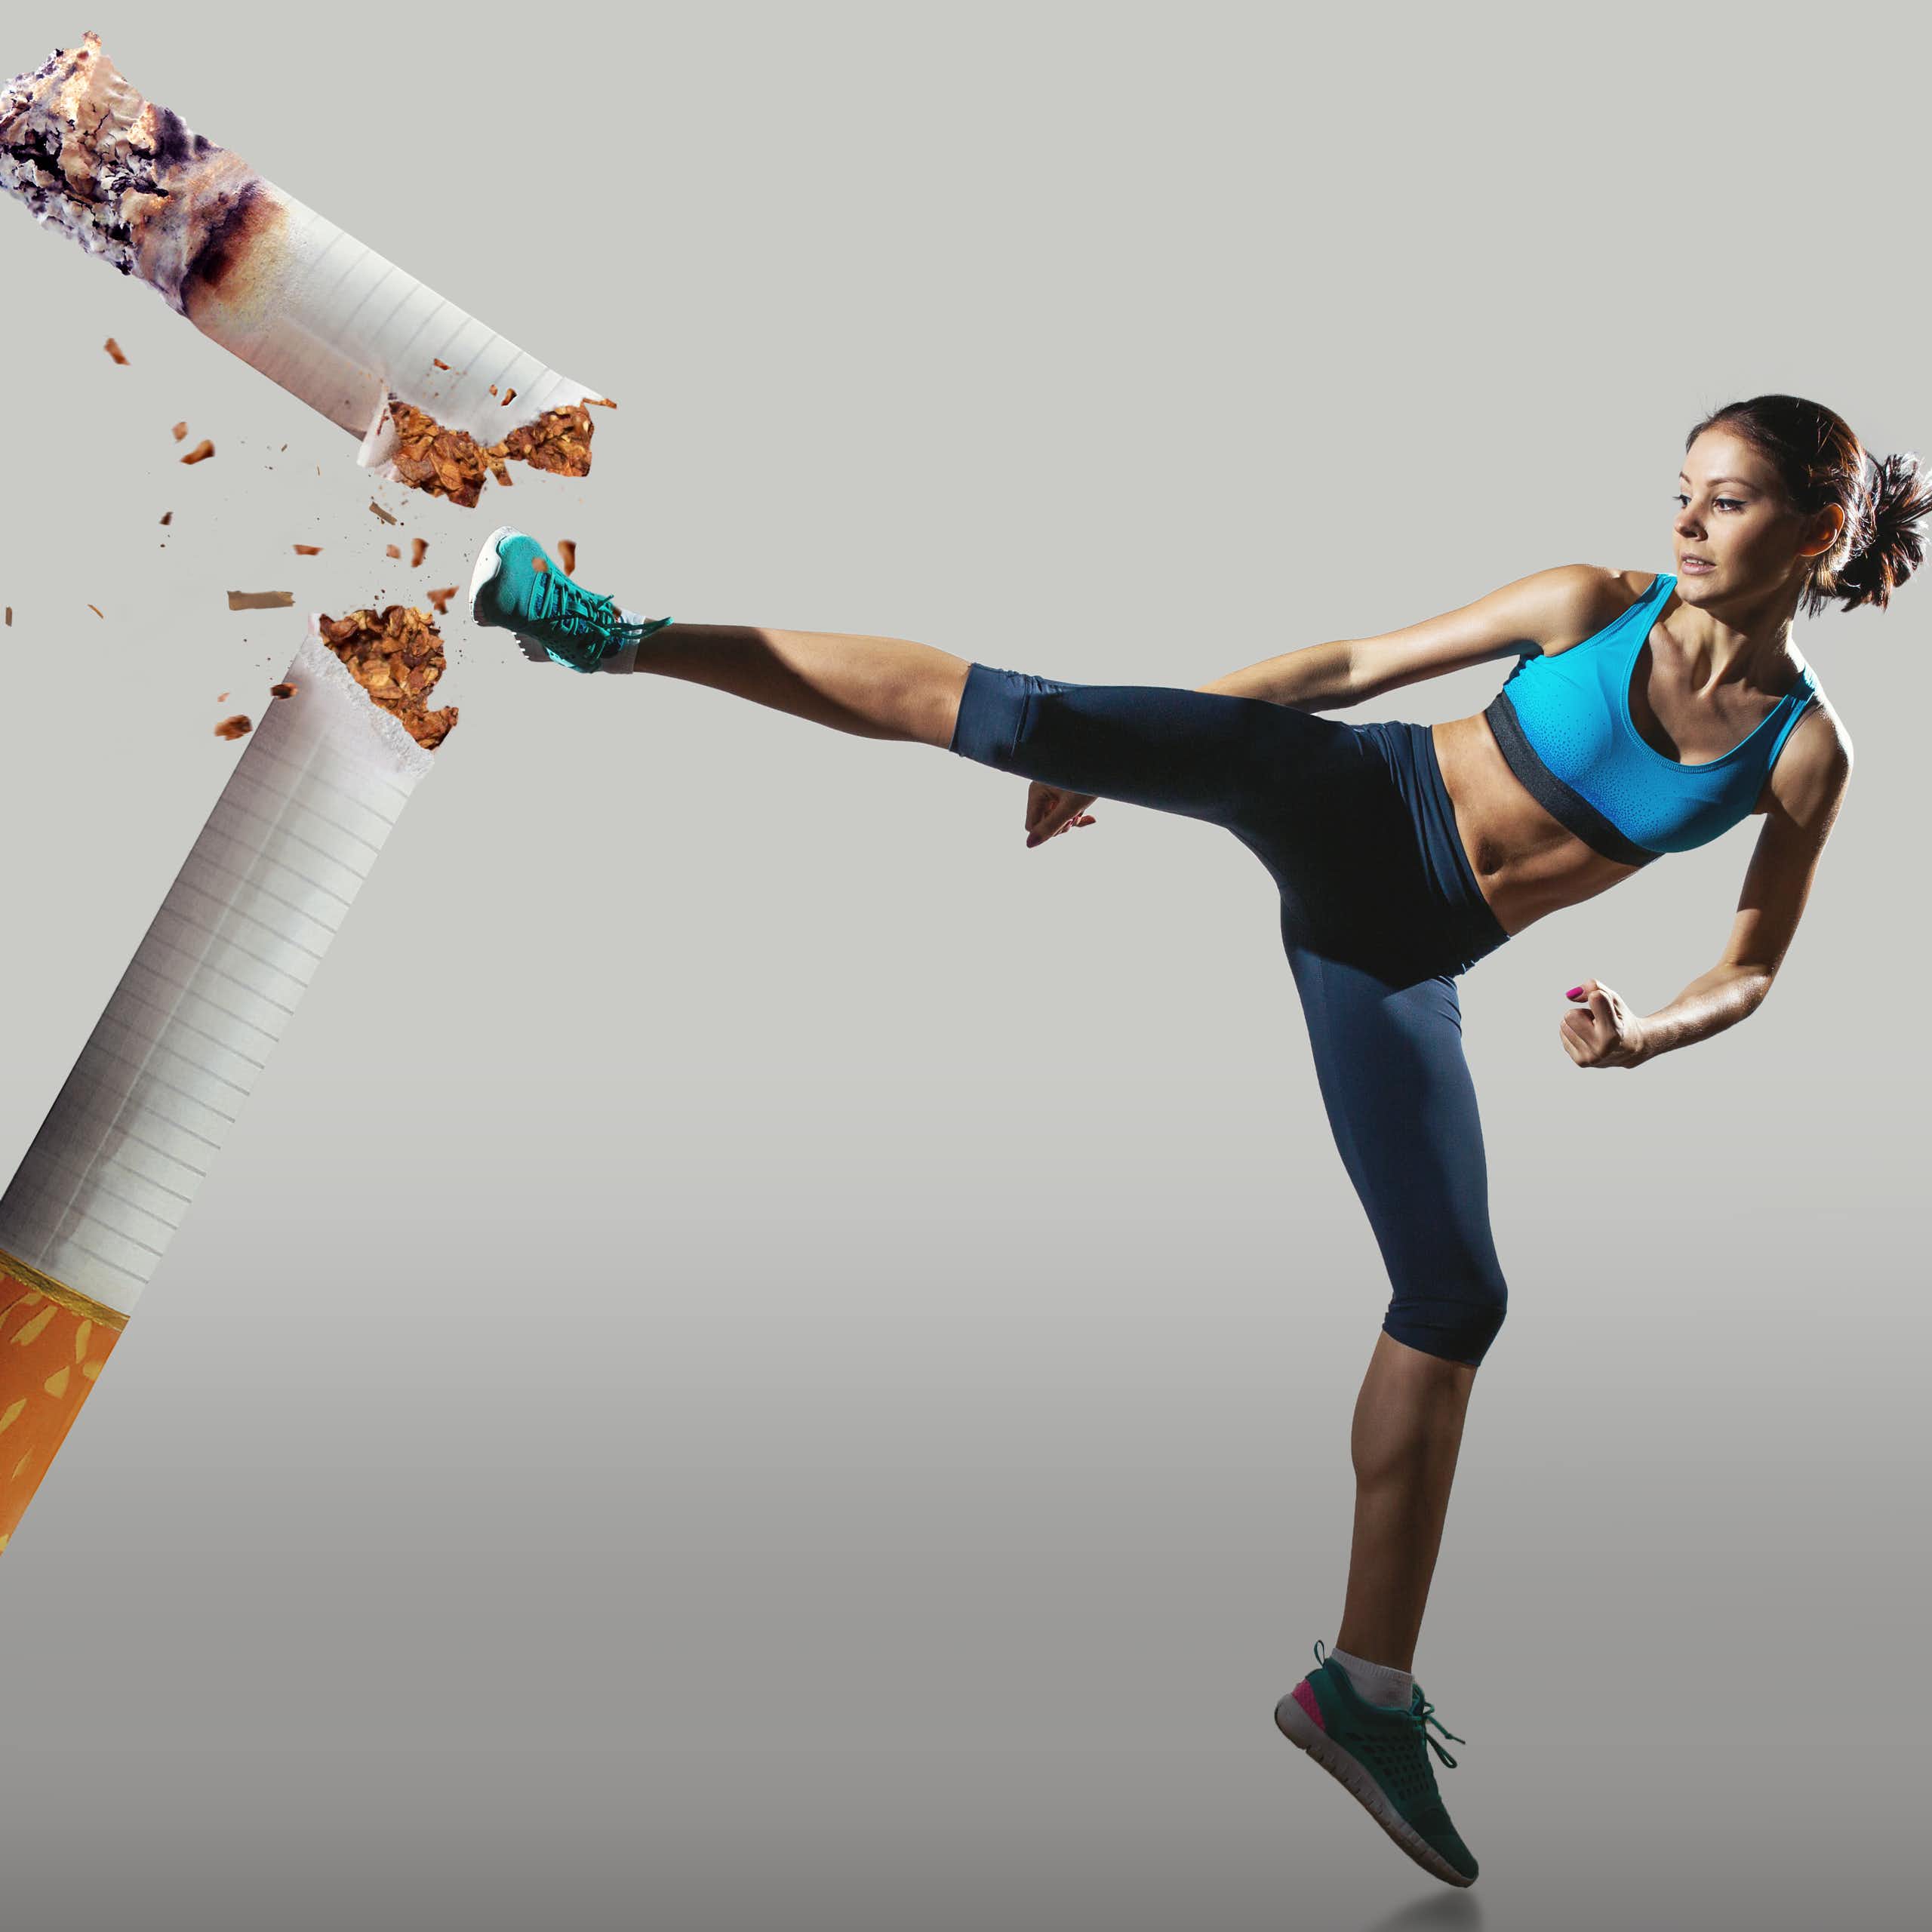 Ejercicio físico: una forma estimulante y efectiva de decir adiós al tabaco